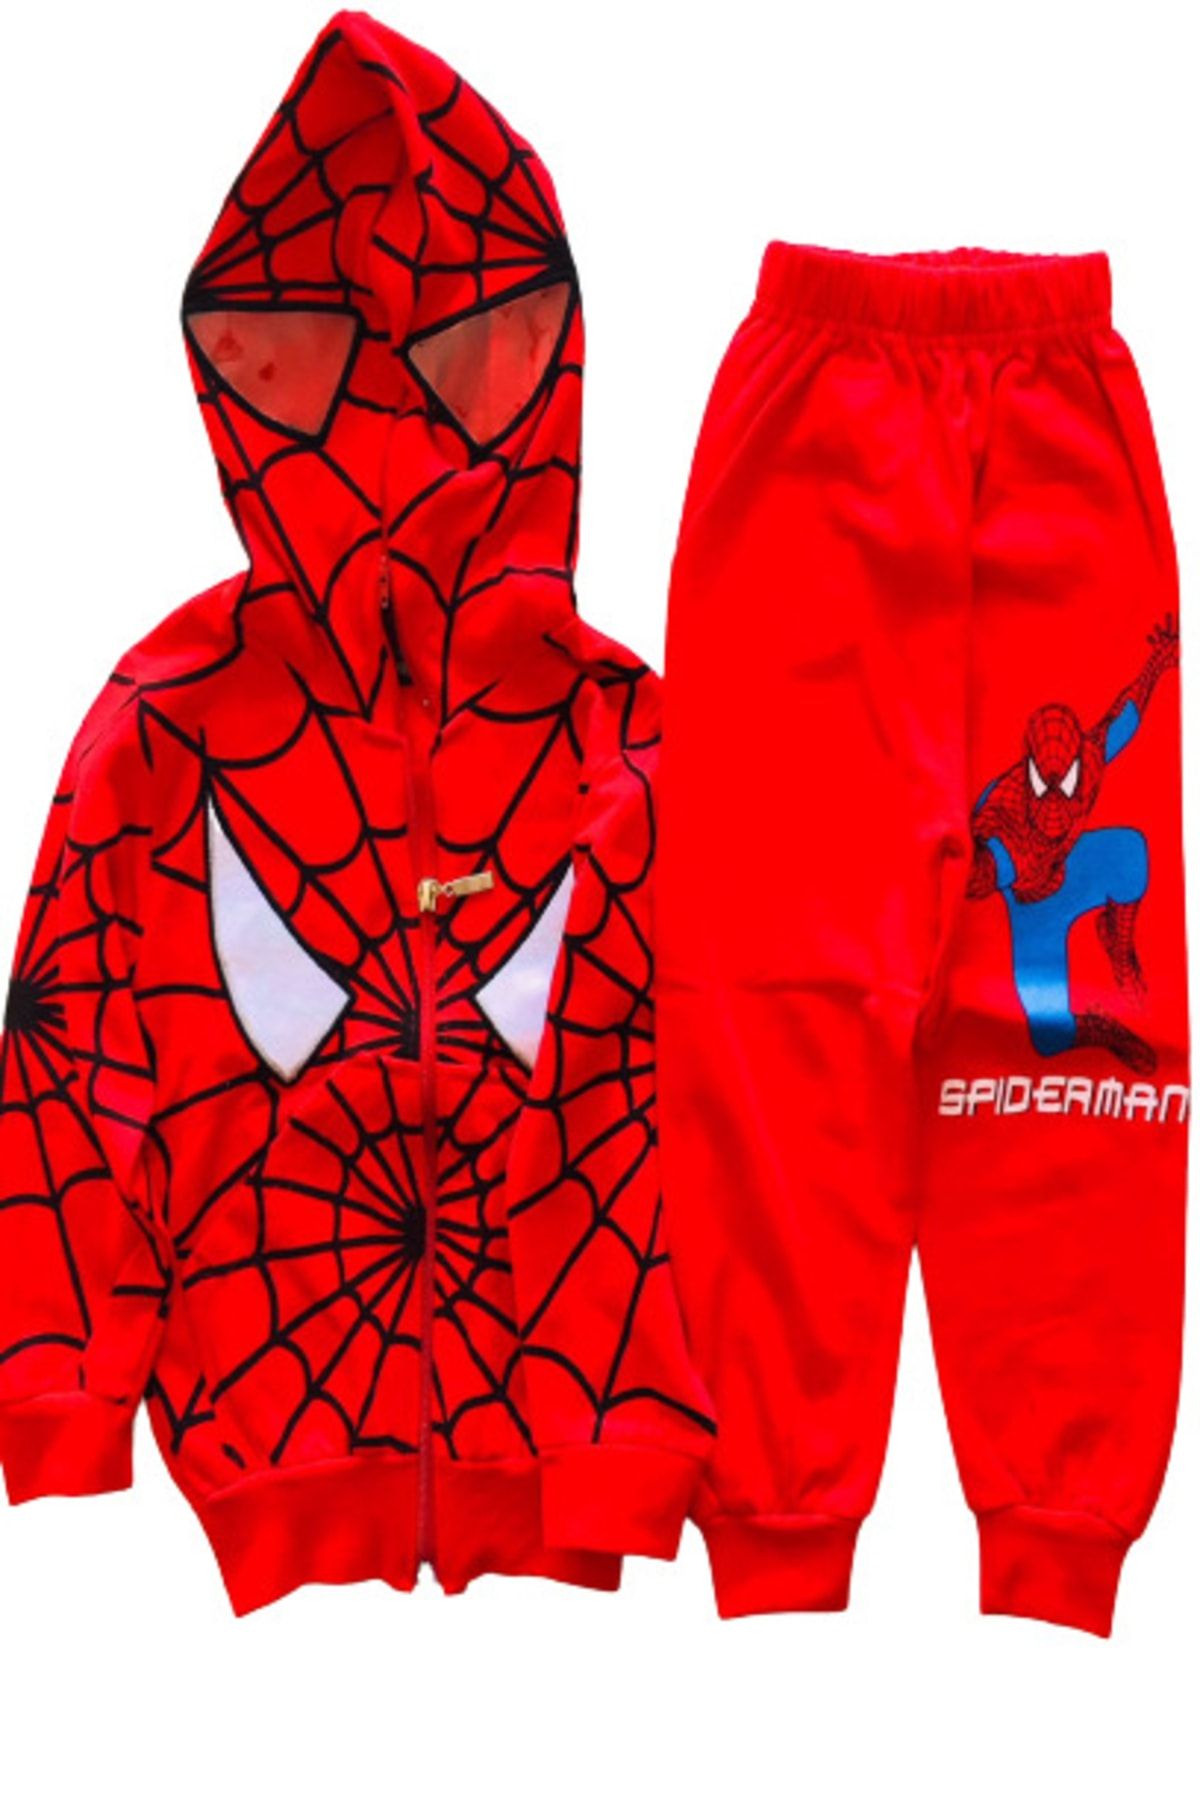 Deejo Örümcek Adam Eşofman Takımı Spiderman Kostümü Maskeli Kapüşonlu